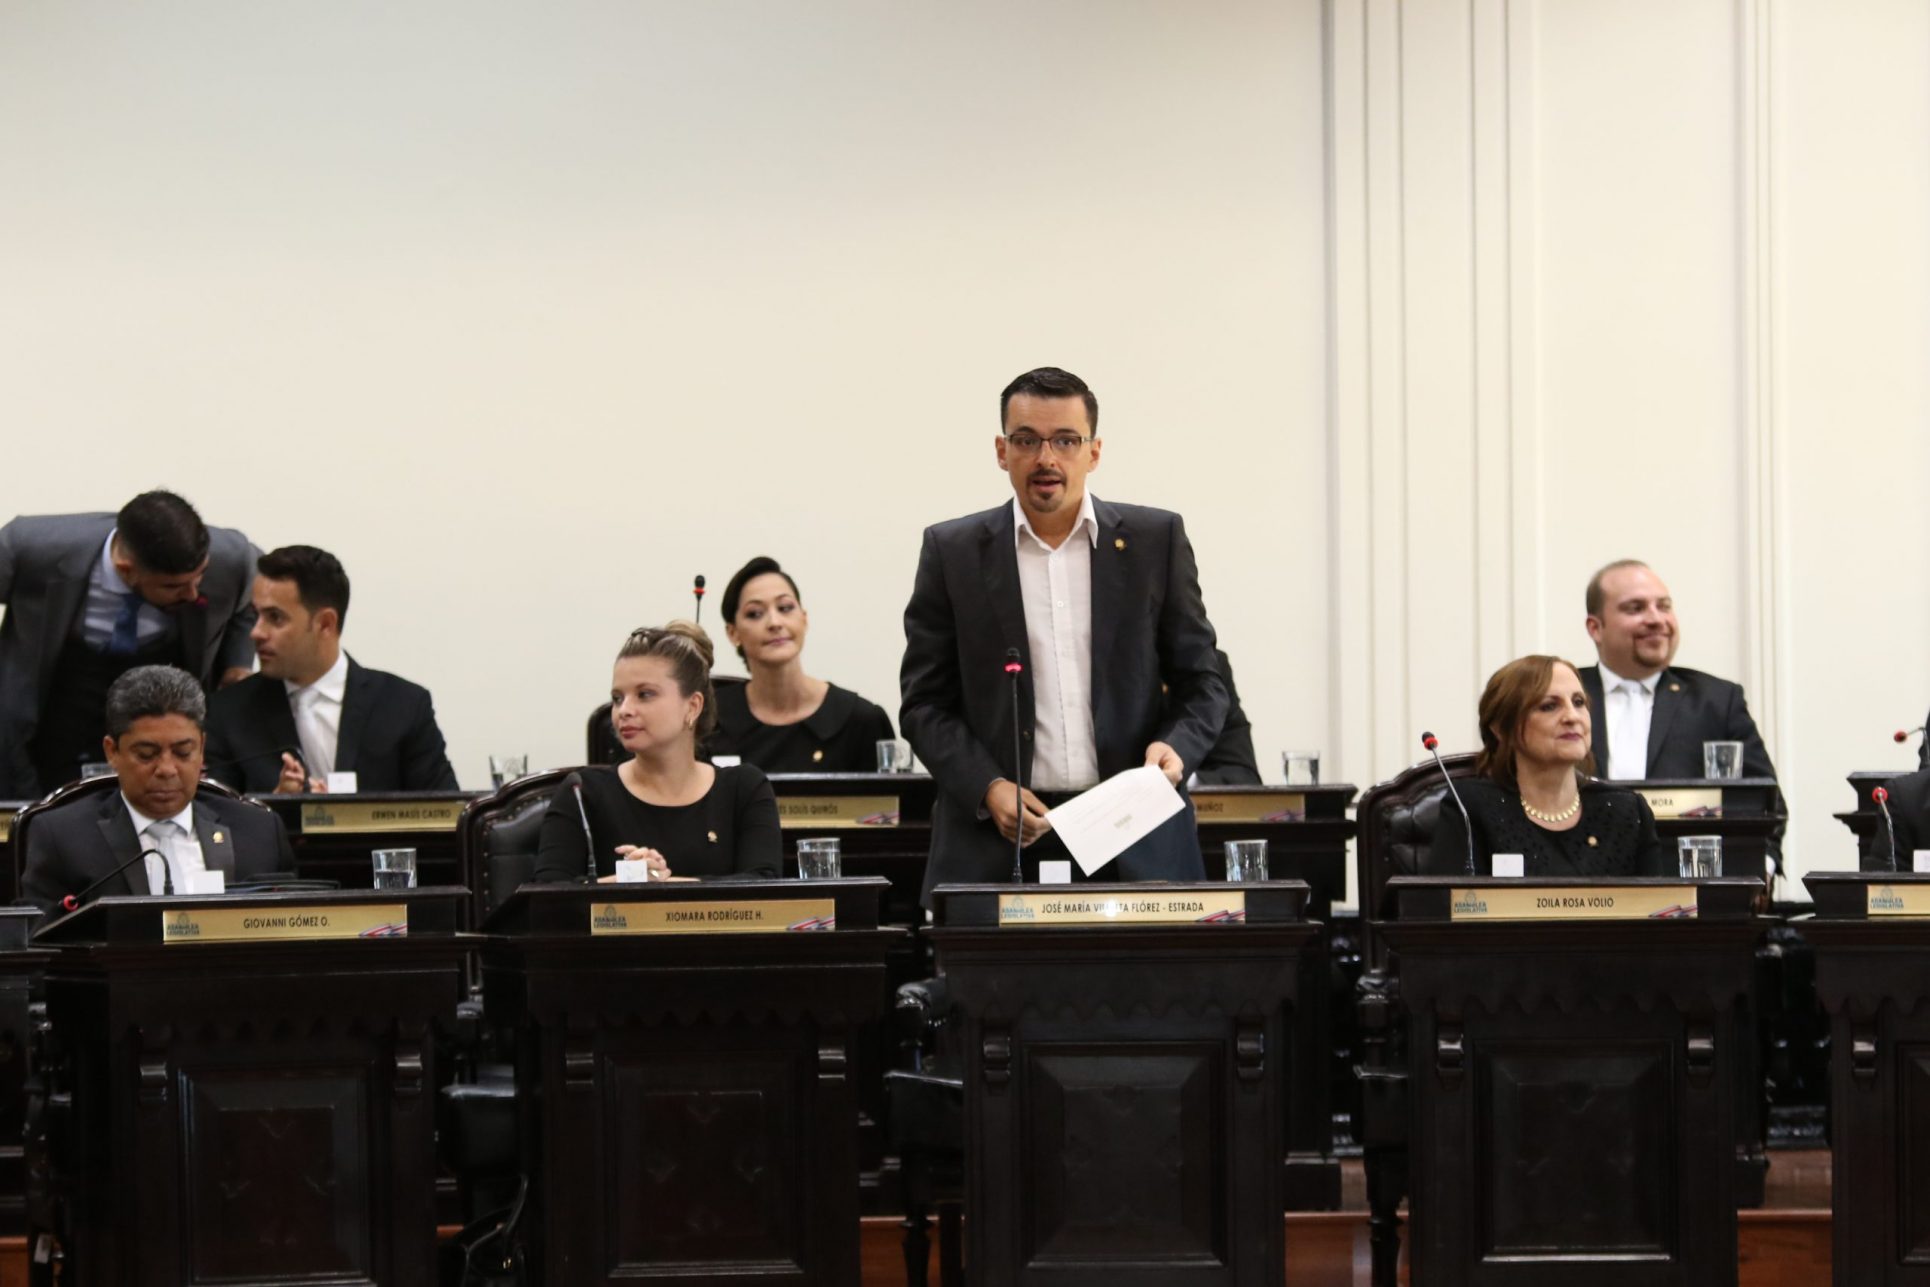 Sala IV rechaza petición de diputado Villalta de revelar beneficiados con amnistía tributaria por sociedades